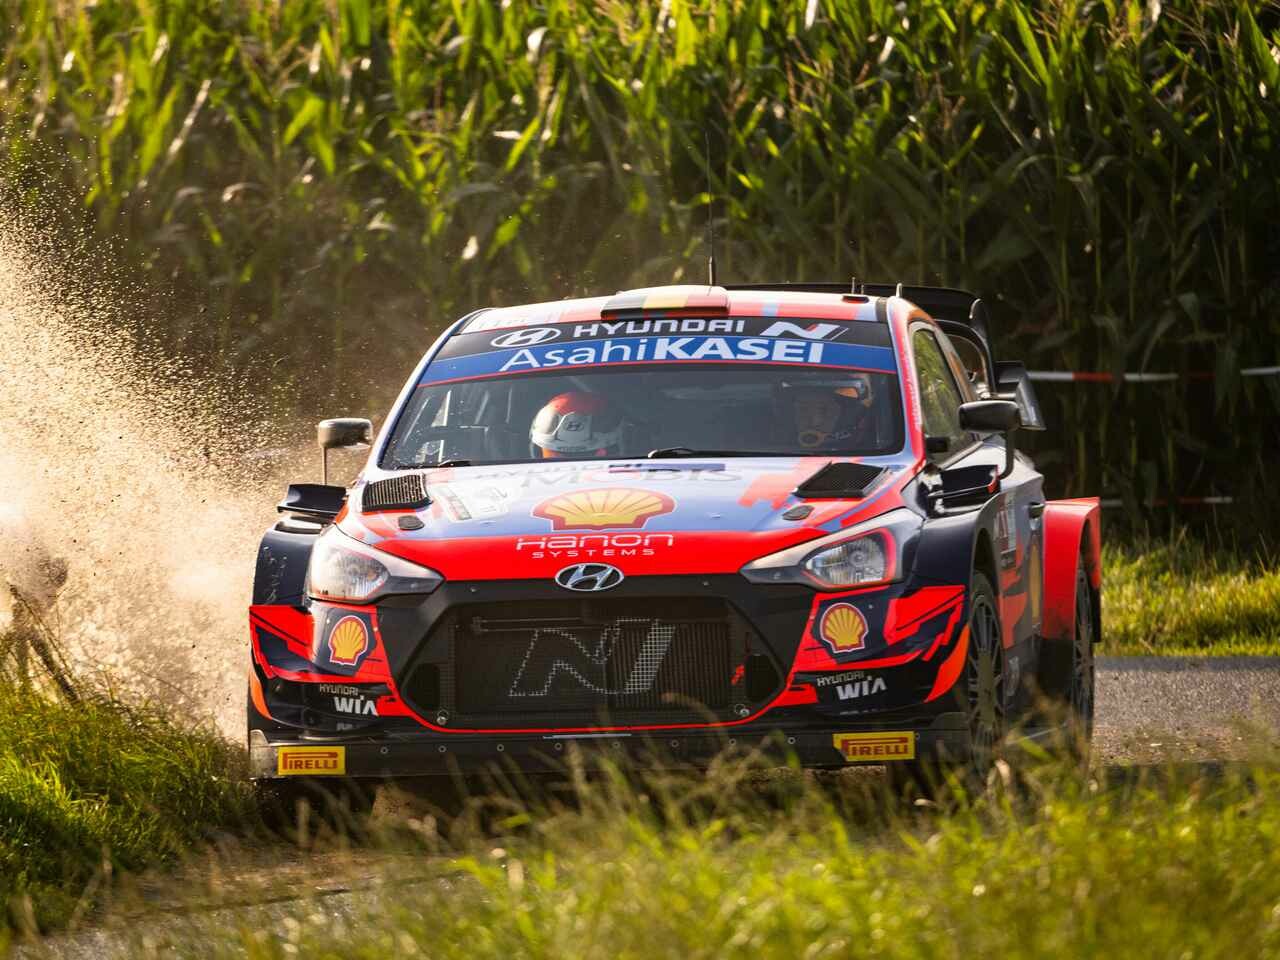 2021年WRC第8戦、トヨタはダストの浮く路面に苦戦。ヒュンダイのヌーヴィルが母国優勝【イープル・ラリー・ベルギー】